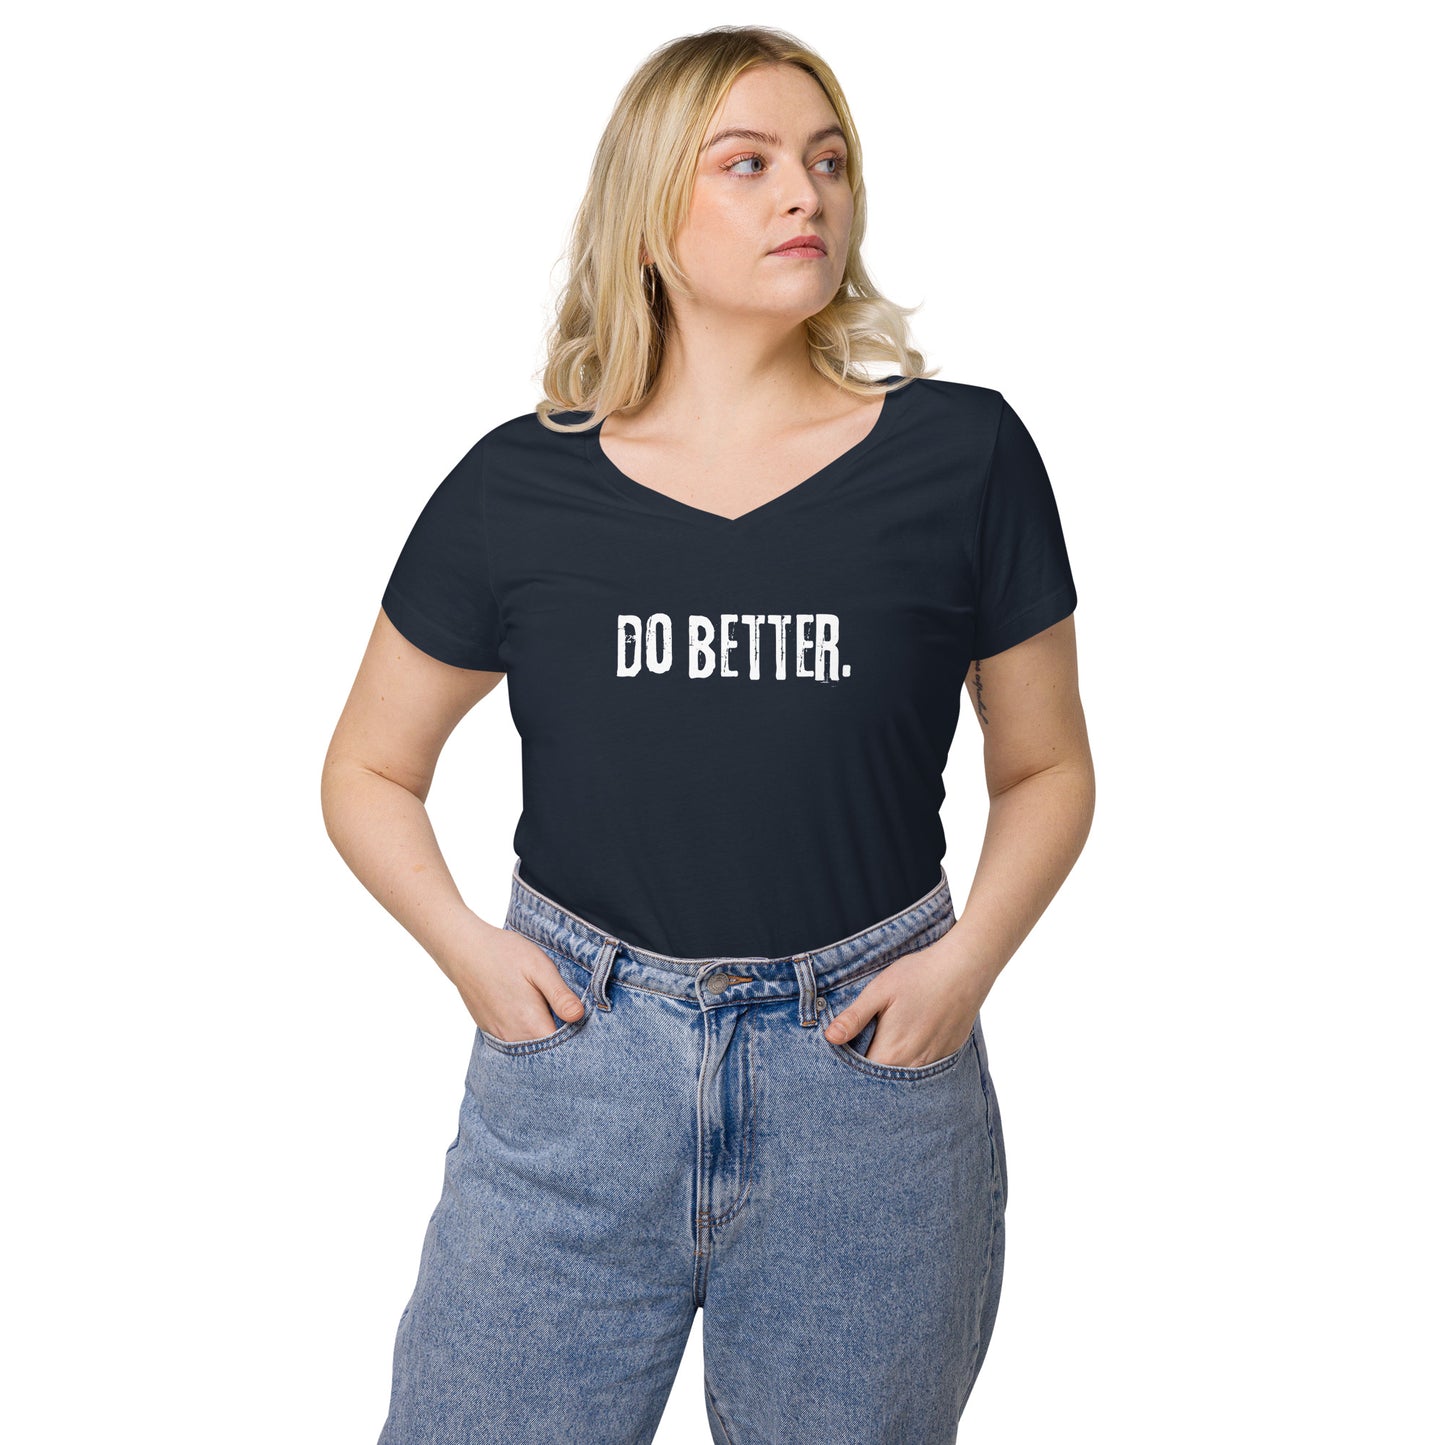 Do Better - Women’s fitted v-neck t-shirt